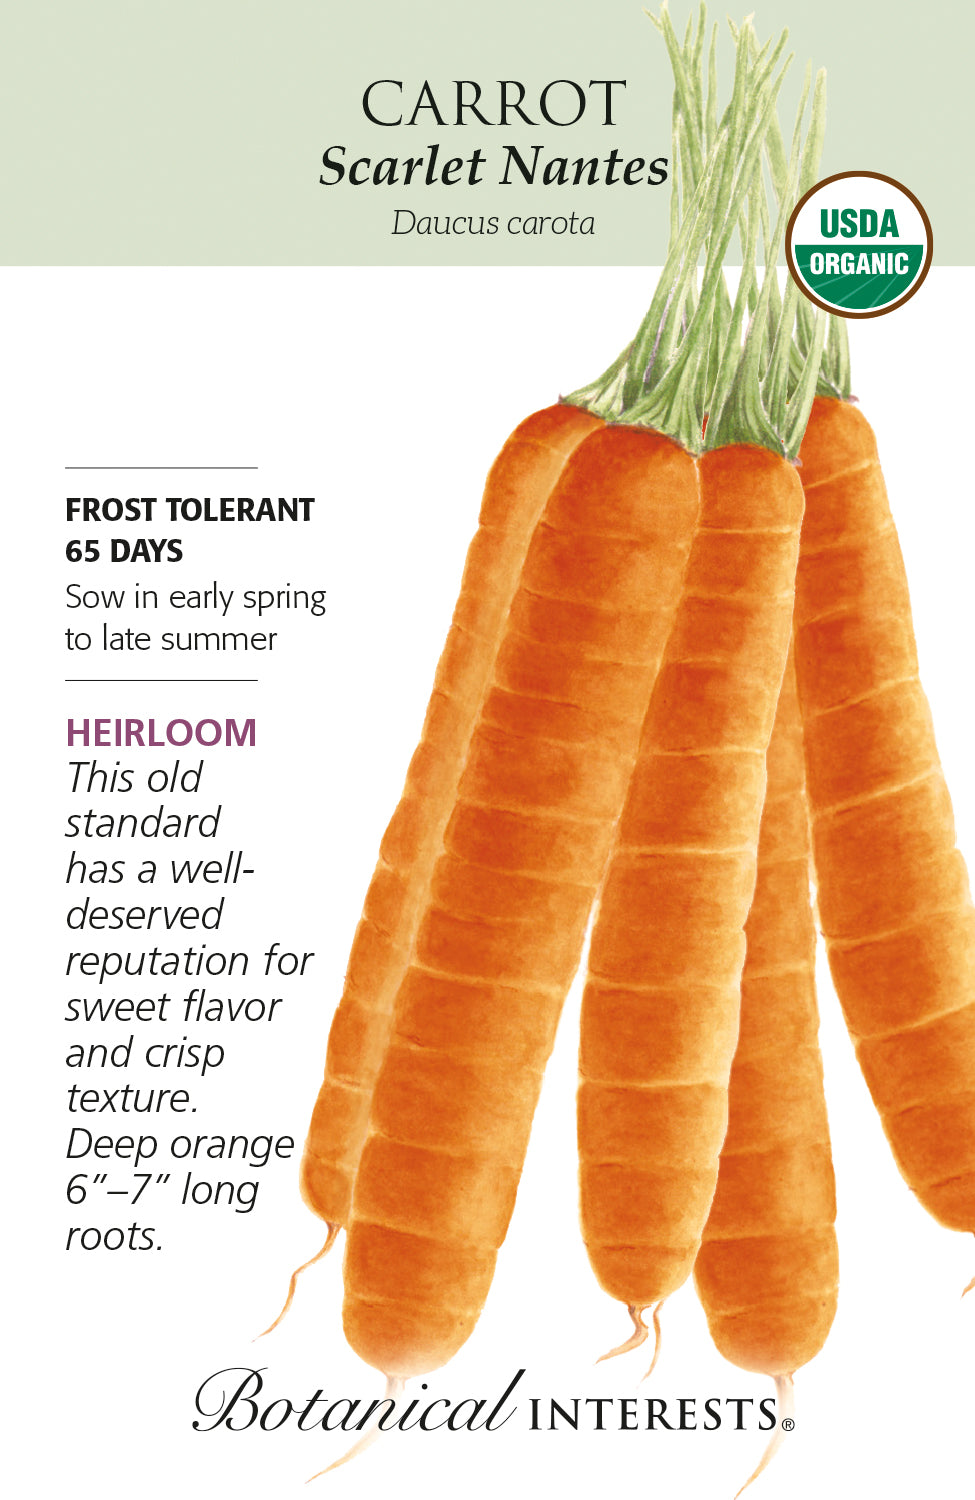 Carrot - Scarlet Nantes Organic